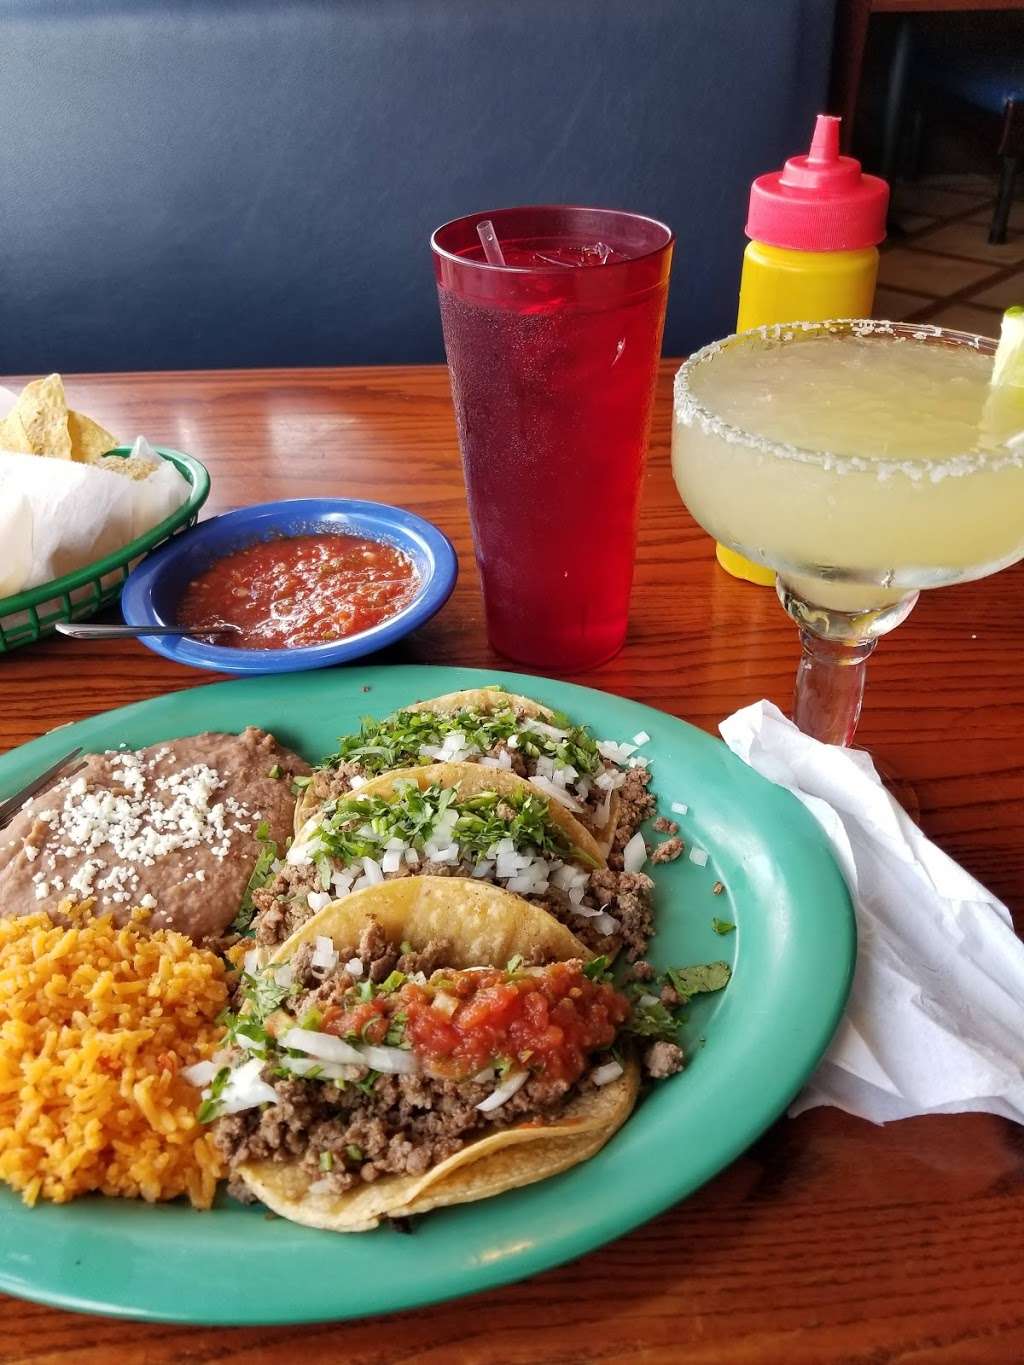 Taqueria La Penca Mexican Restaurant | 9265 W Cermak Rd, North Riverside, IL 60546 | Phone: (708) 442-9011